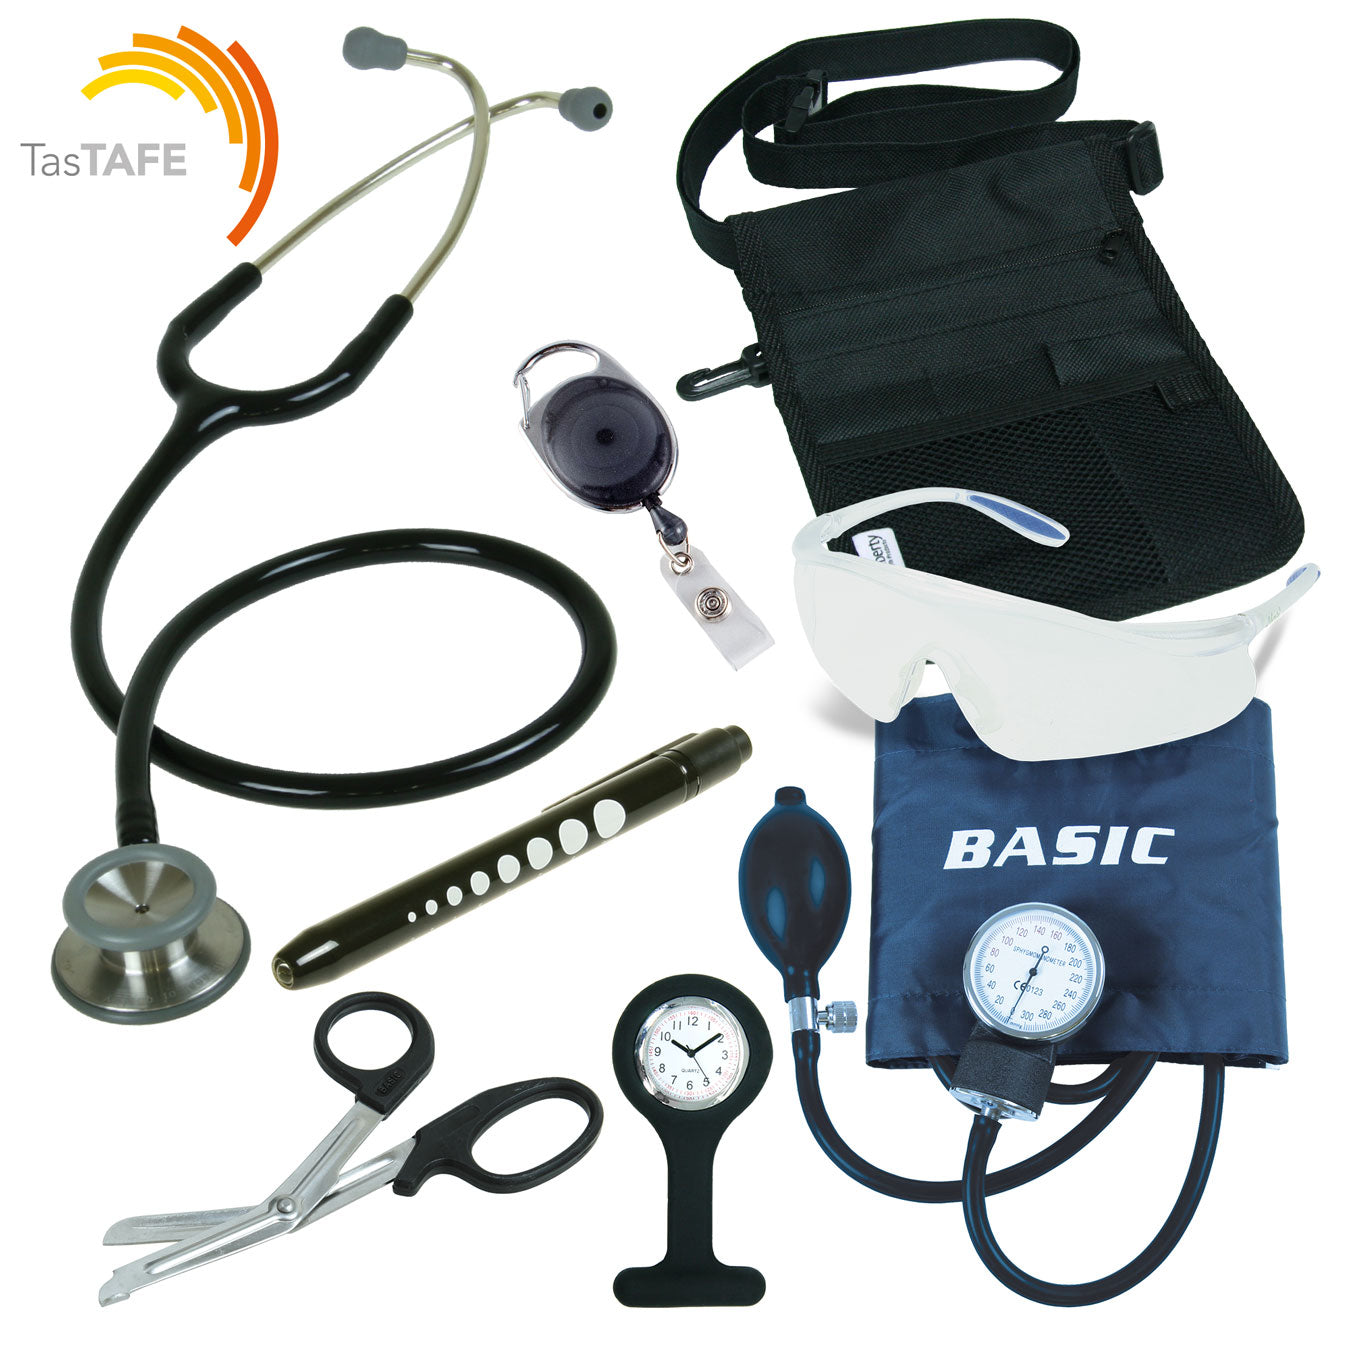 TasTAFE Nurse Kit- Black